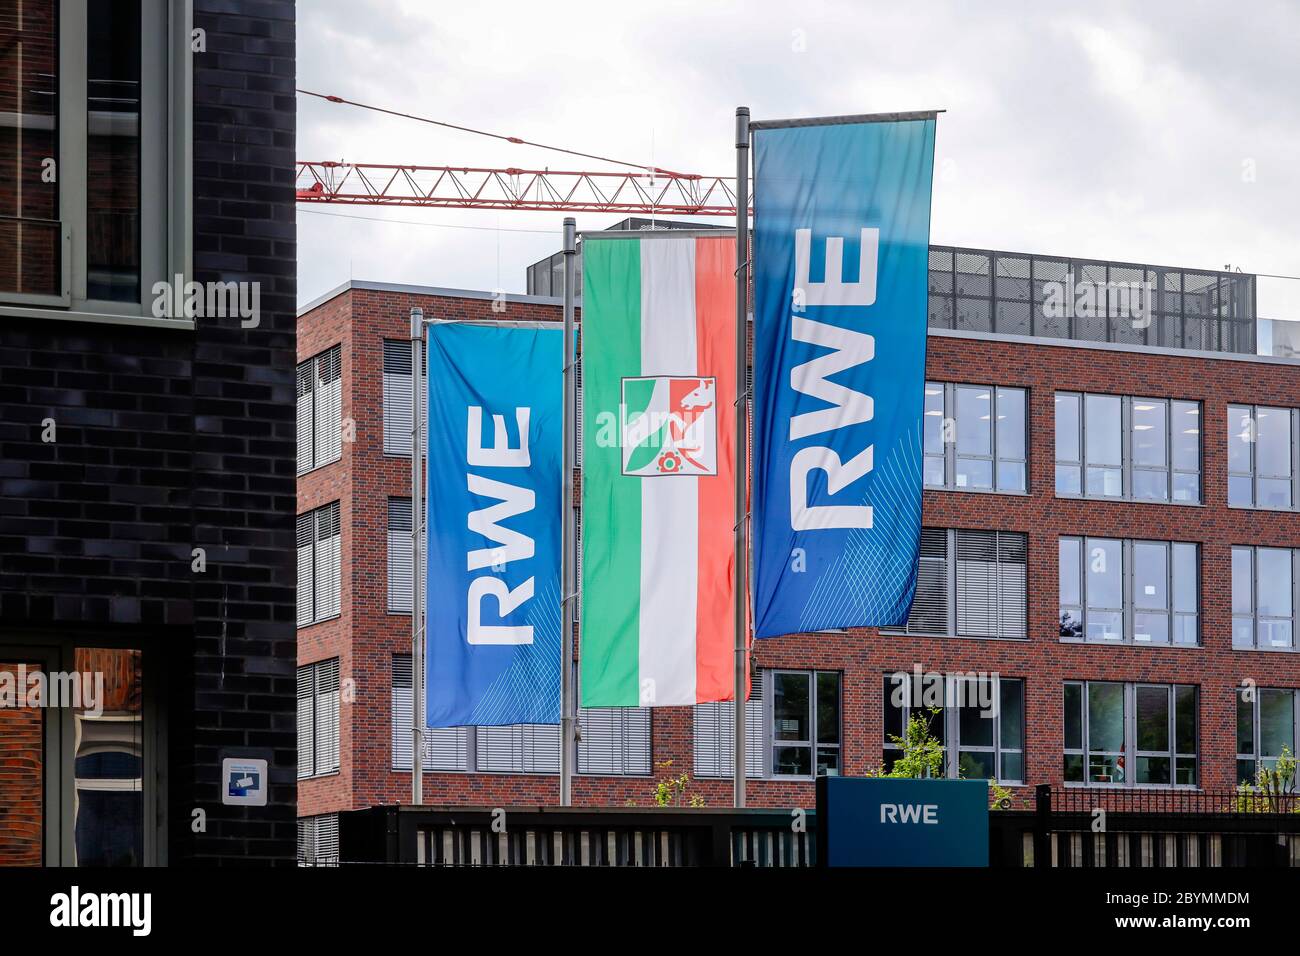 25.05.2020, Essen, North Rhine-Westphalia, Germany - RWE Head Office, new campus at the new RWE Platz on Altenessener Strasse in the Altenessen distri Stock Photo